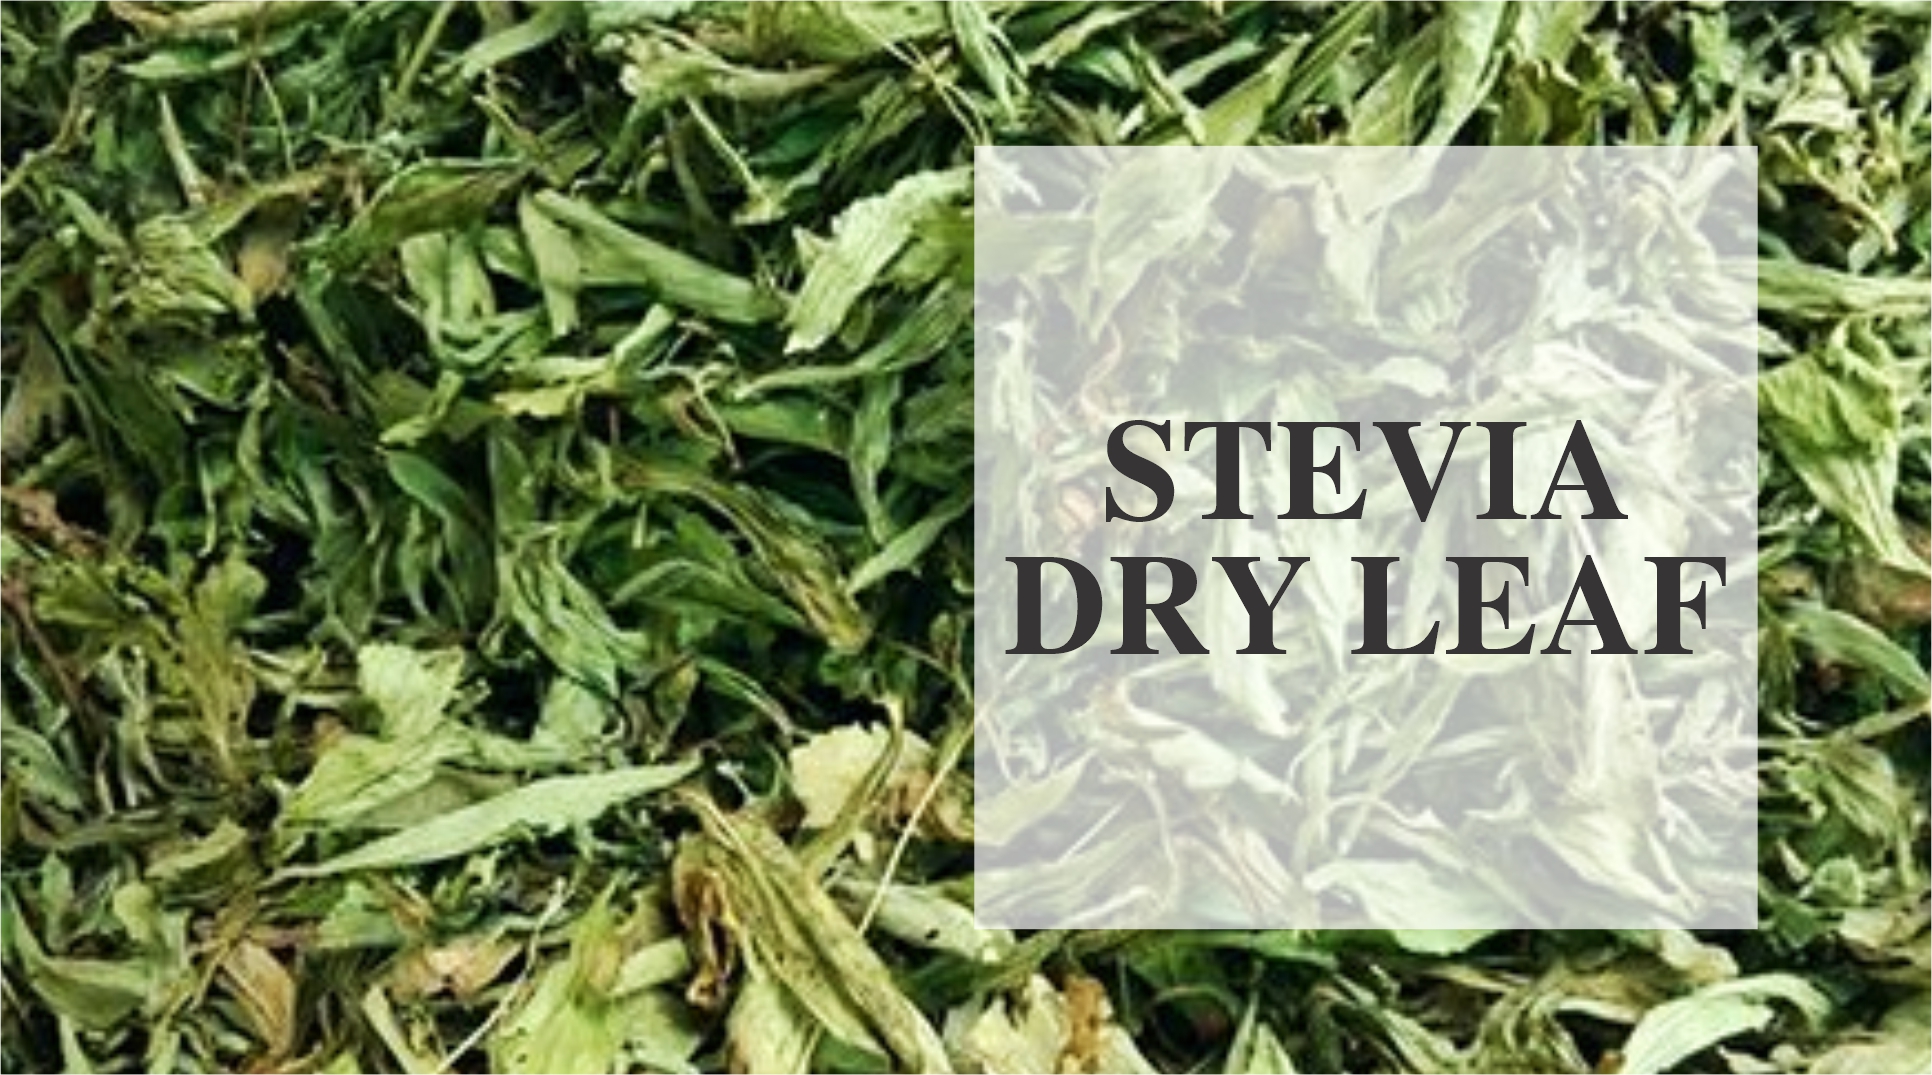 Zindagi stevia dry leafs